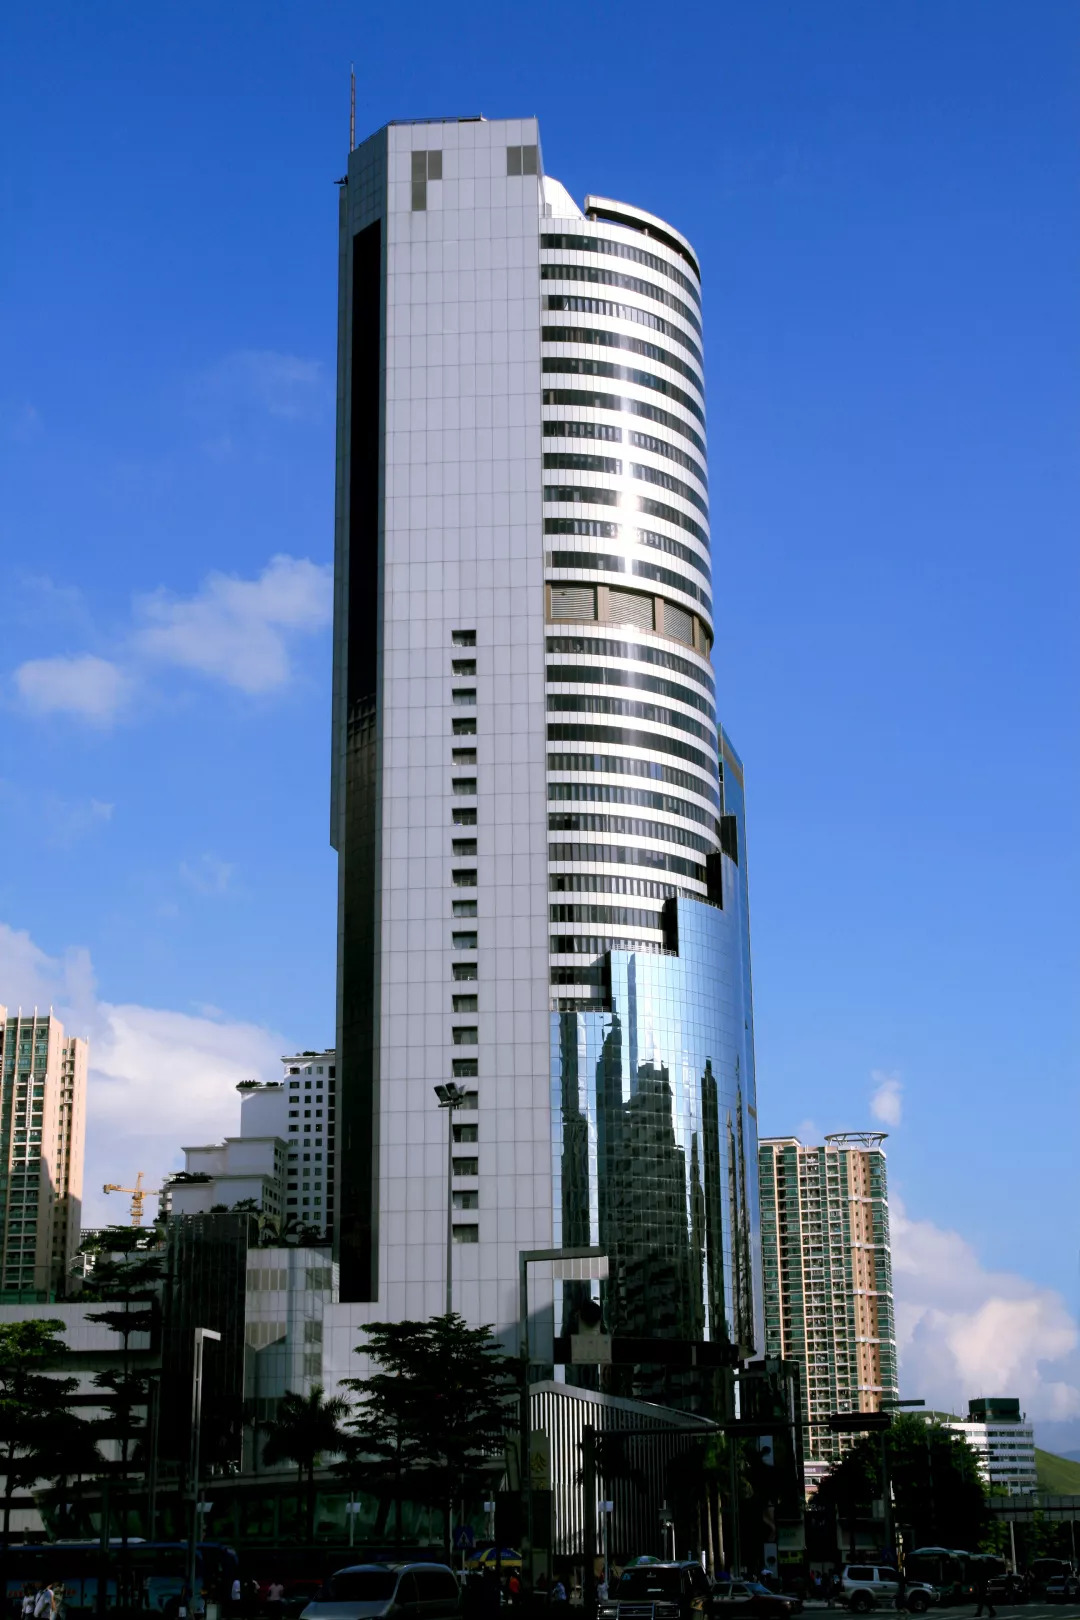 深圳发展中心大厦深圳发展中心大厦是由深圳市特区发展公司开发的项目